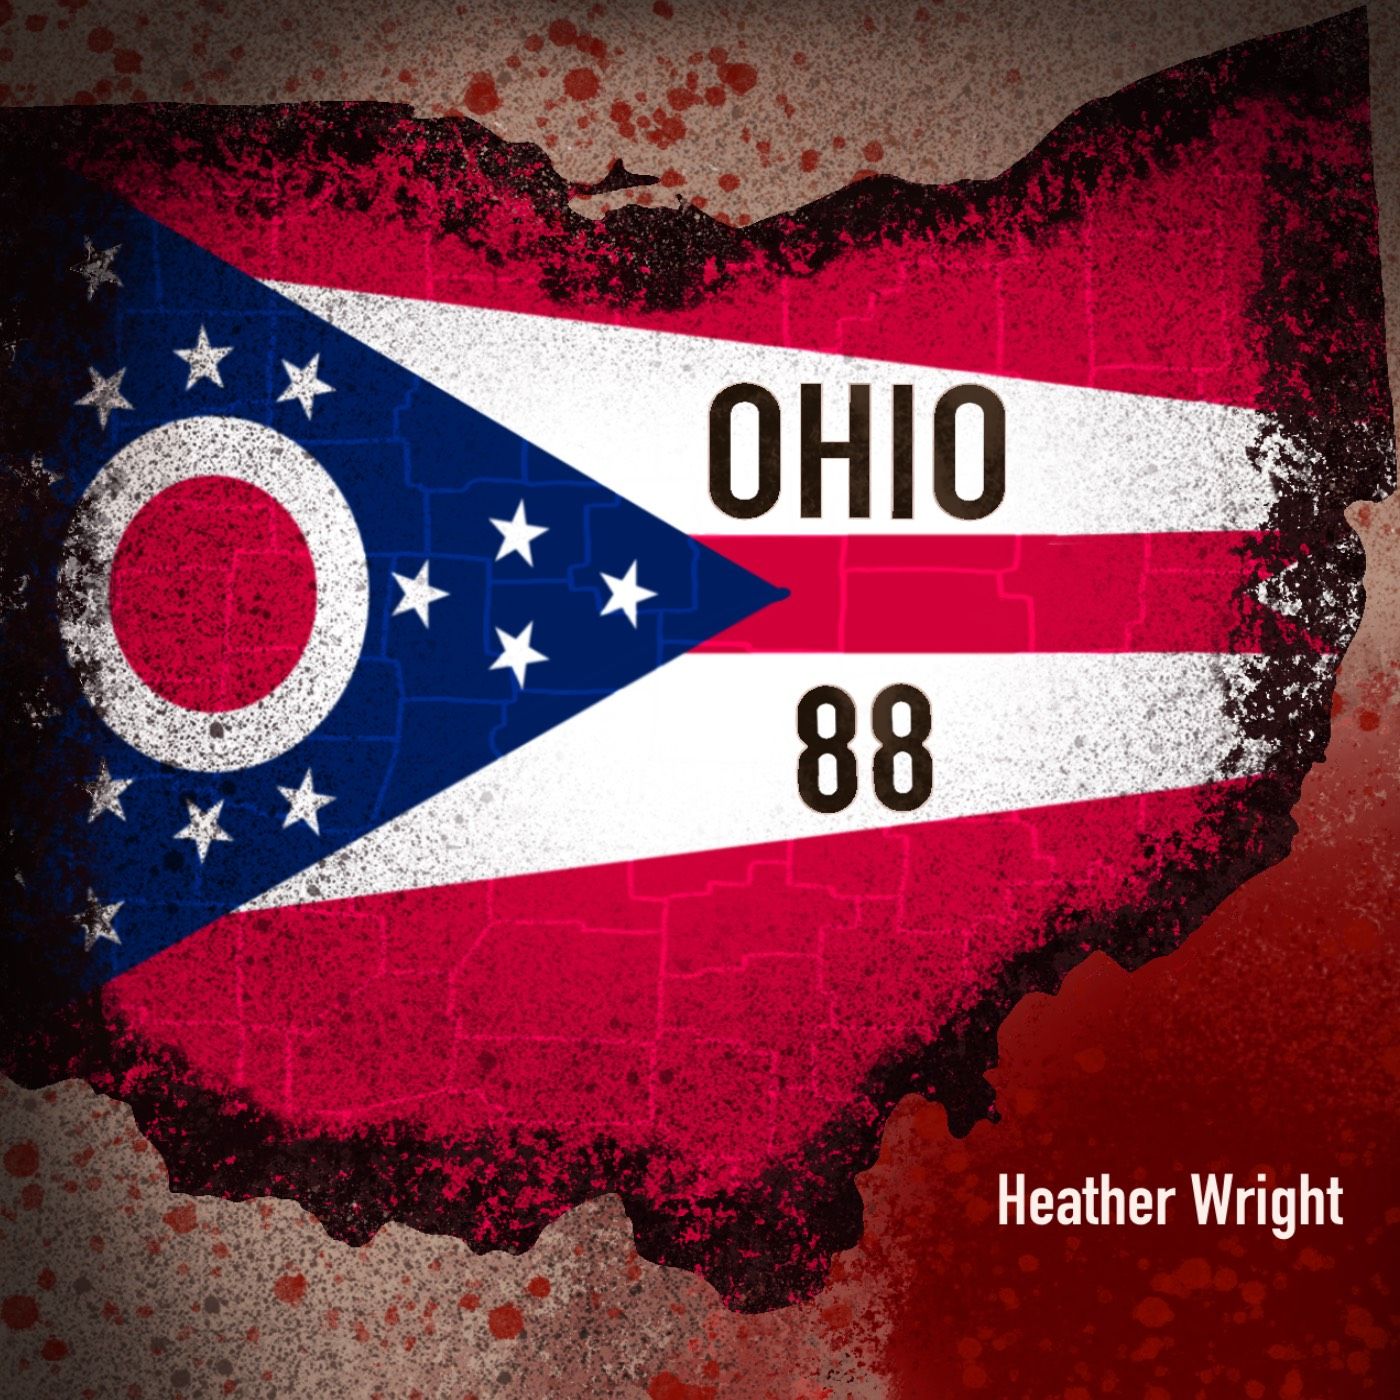 Ohio 88